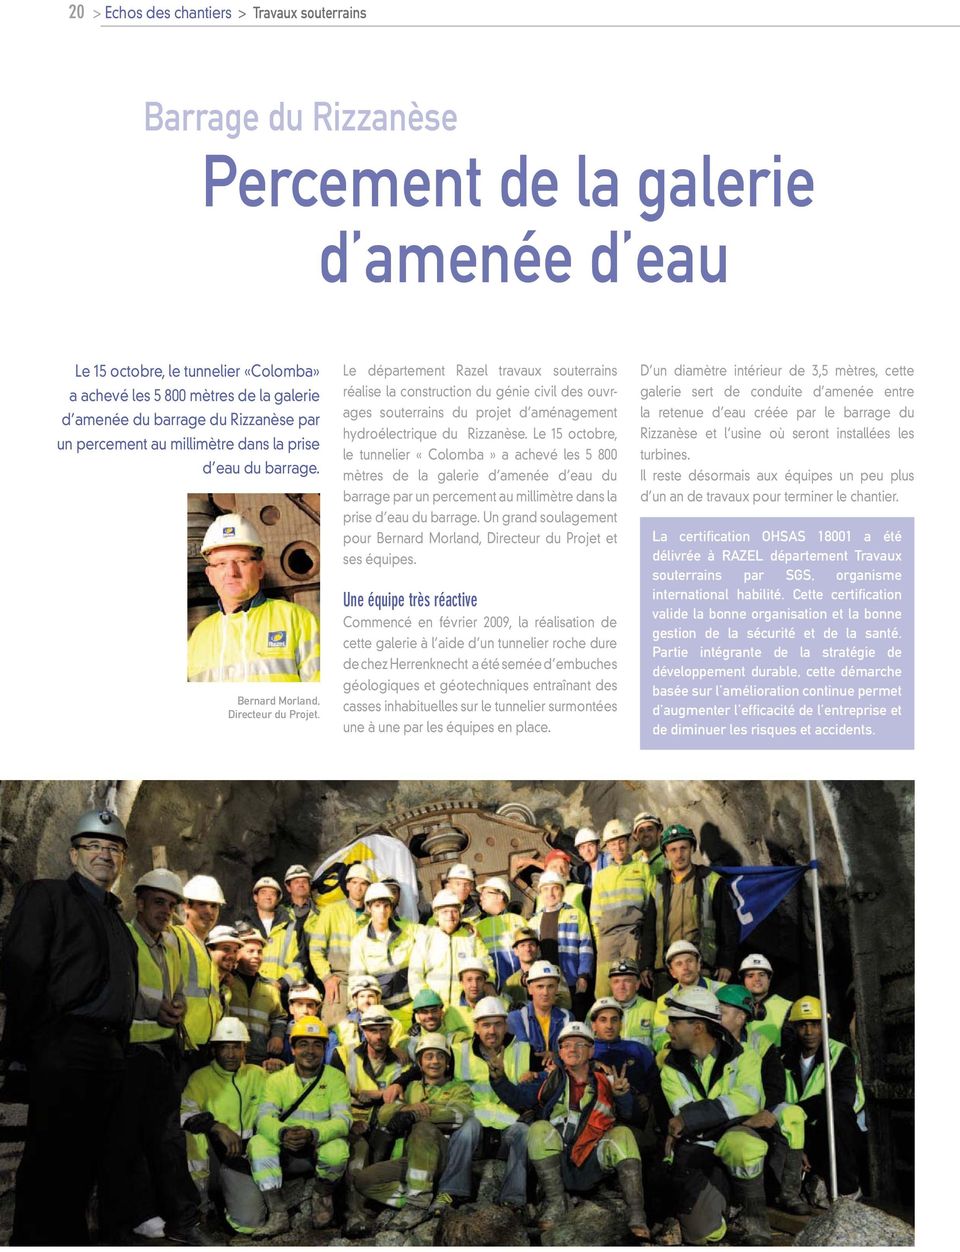 Le département Razel travaux souterrains réalise la construction du génie civil des ouvrages souterrains du projet d aménagement hydroélectrique du Rizzanèse.